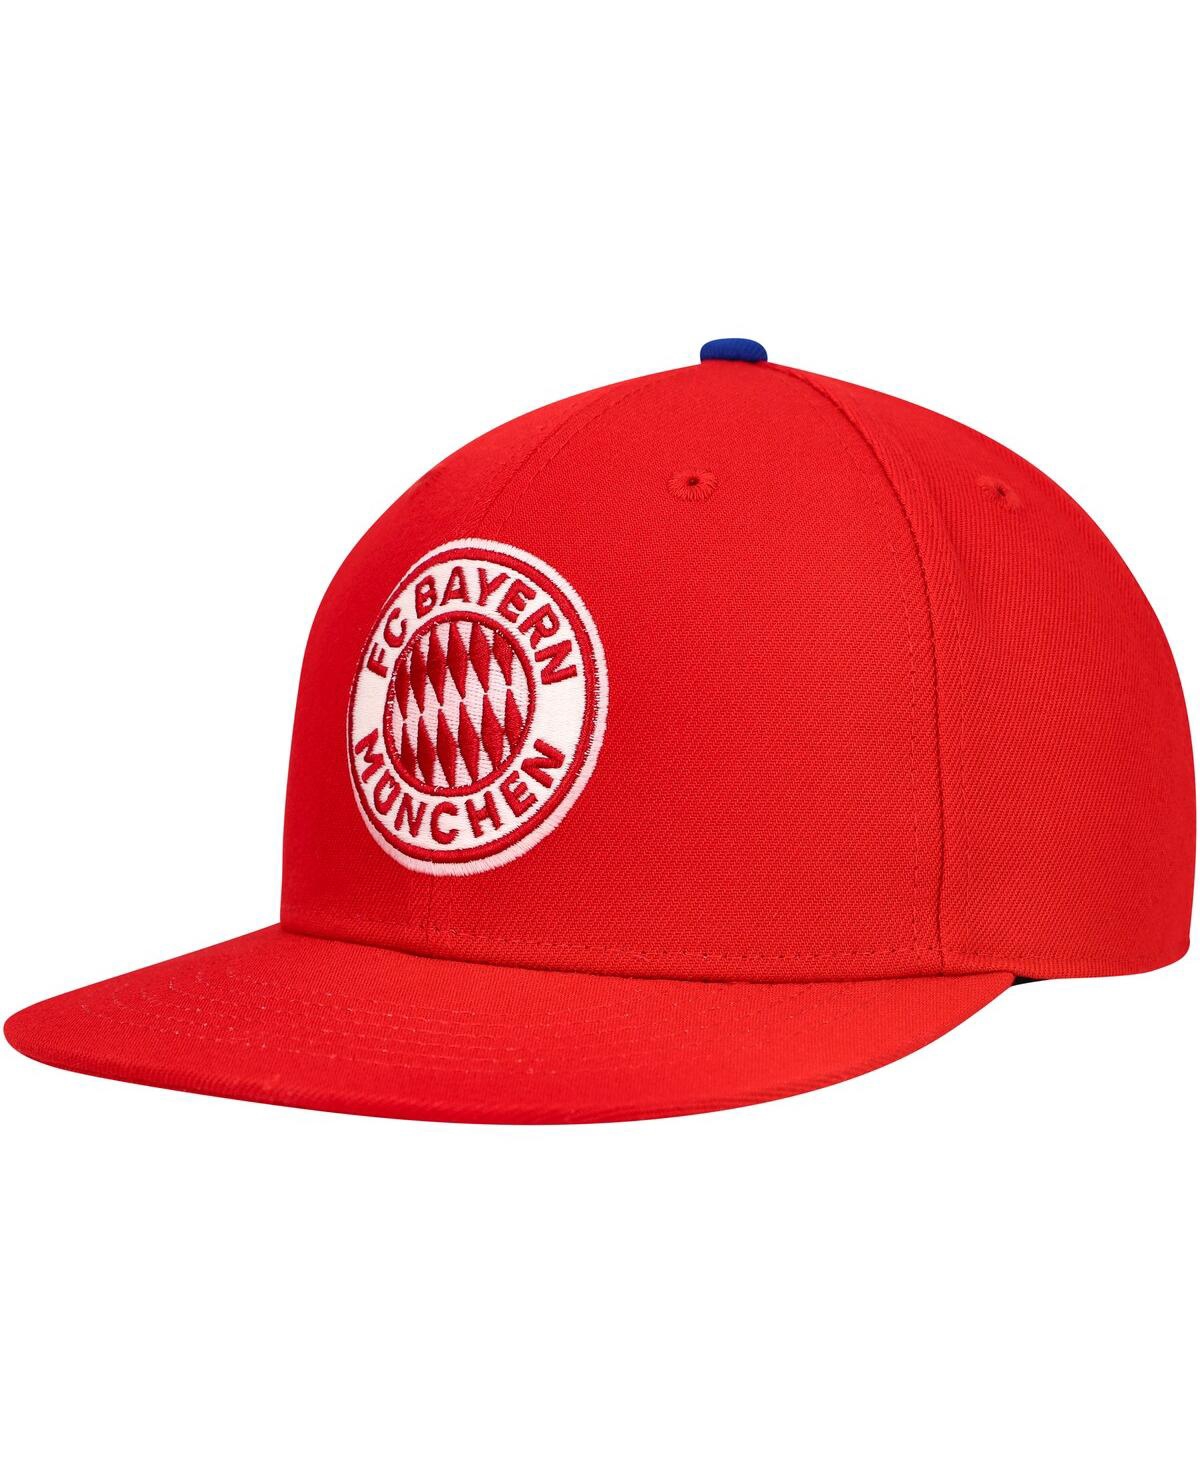 Fan Ink Men's Scarlet Bayern Munich America's Game Snapback Hat